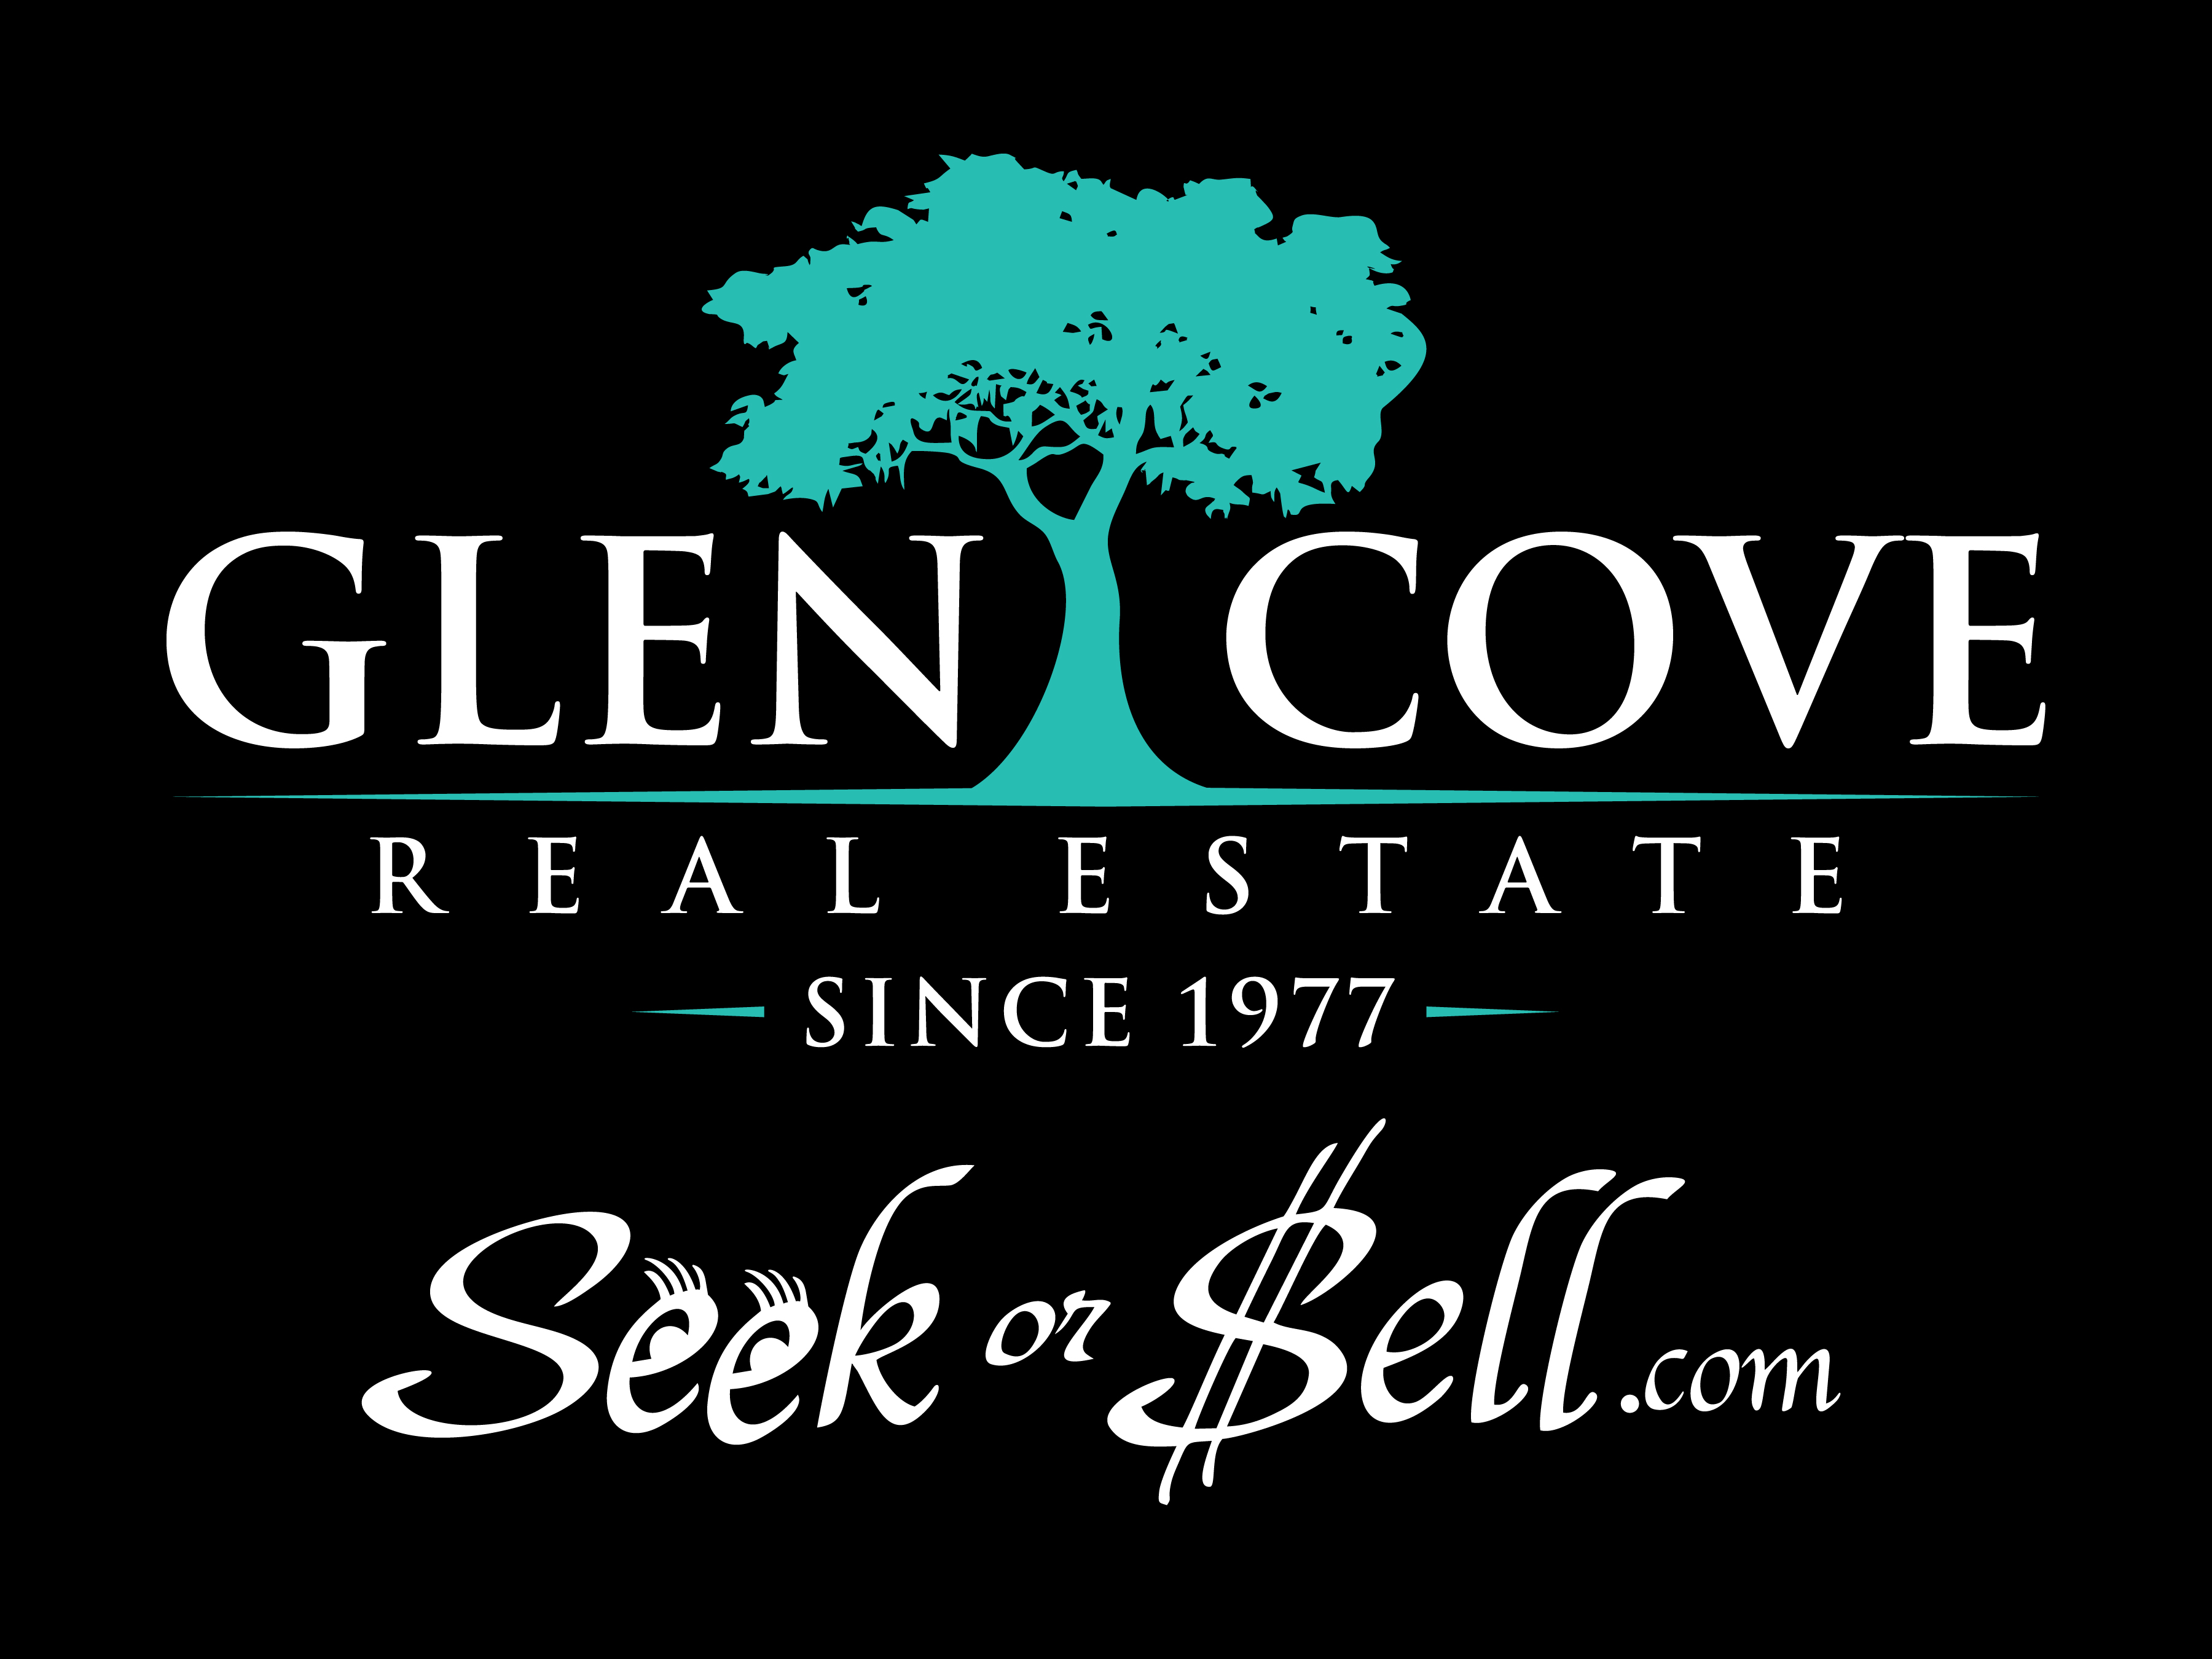 Glen Cove Real Estate